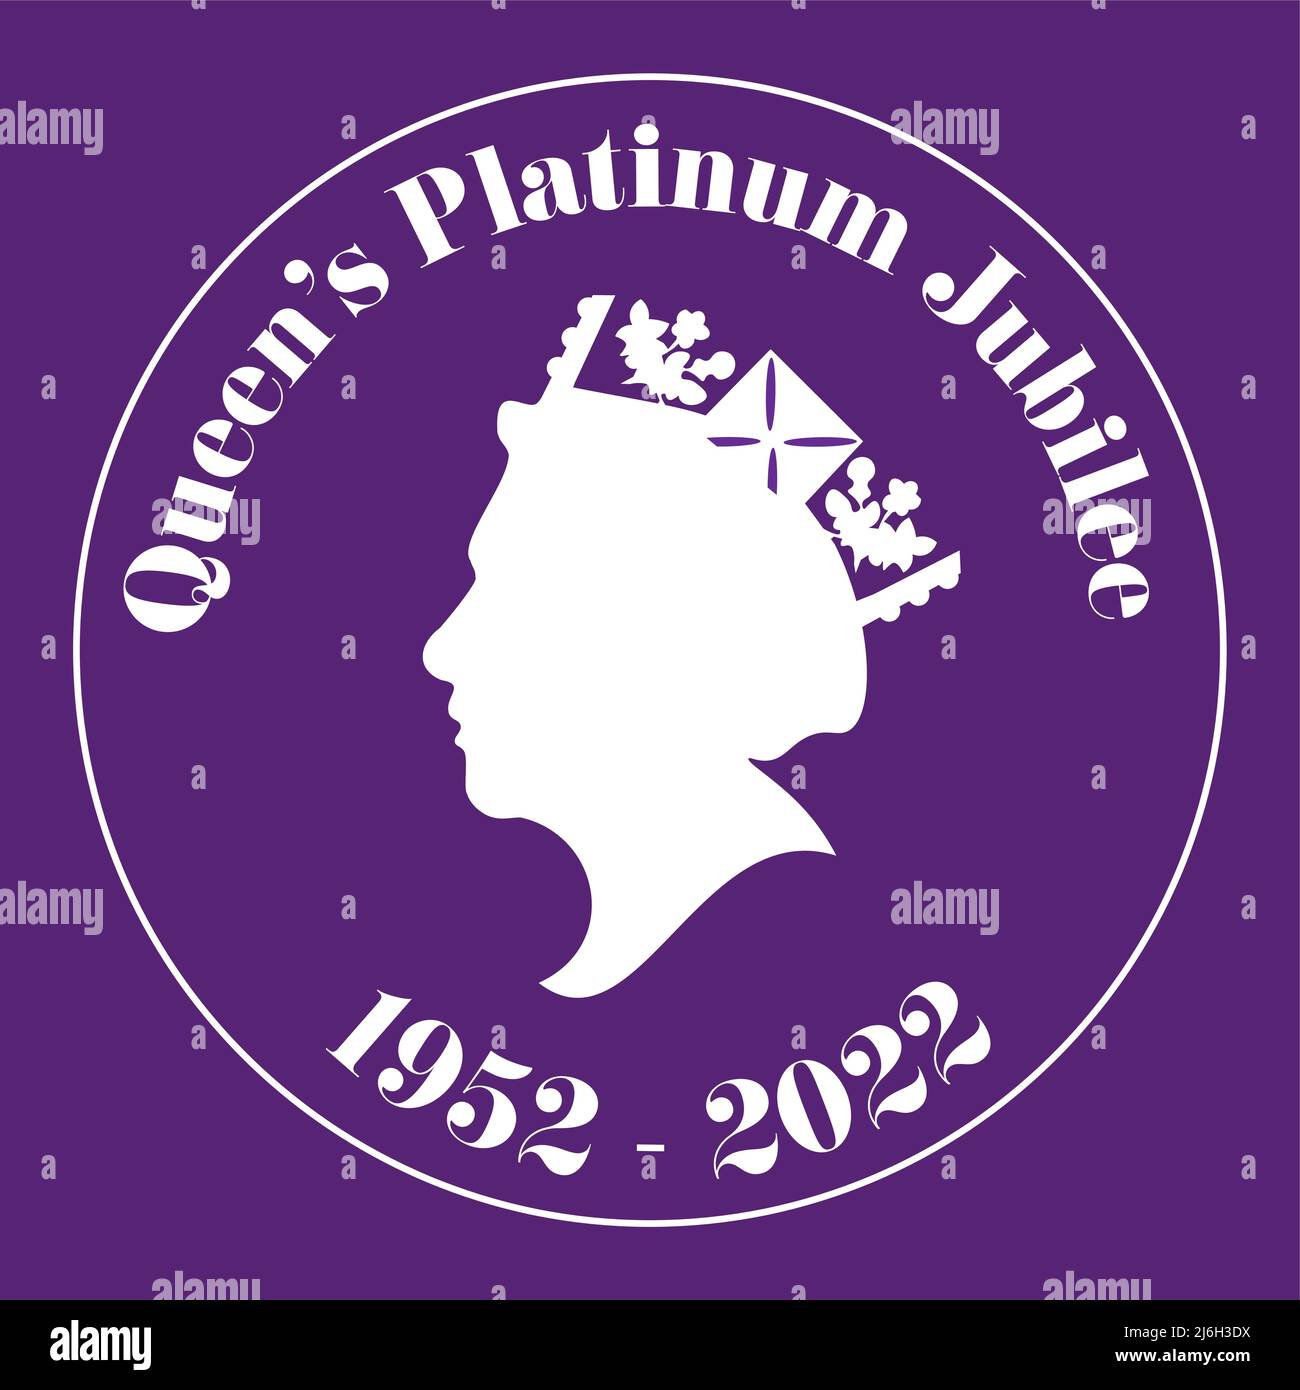 Le Queens Platinum Jubilee 2022 - en 2022, sa Majesté la Reine deviendra le premier monarque britannique à célébrer un Jubilé de platine après 70 ans Illustration de Vecteur